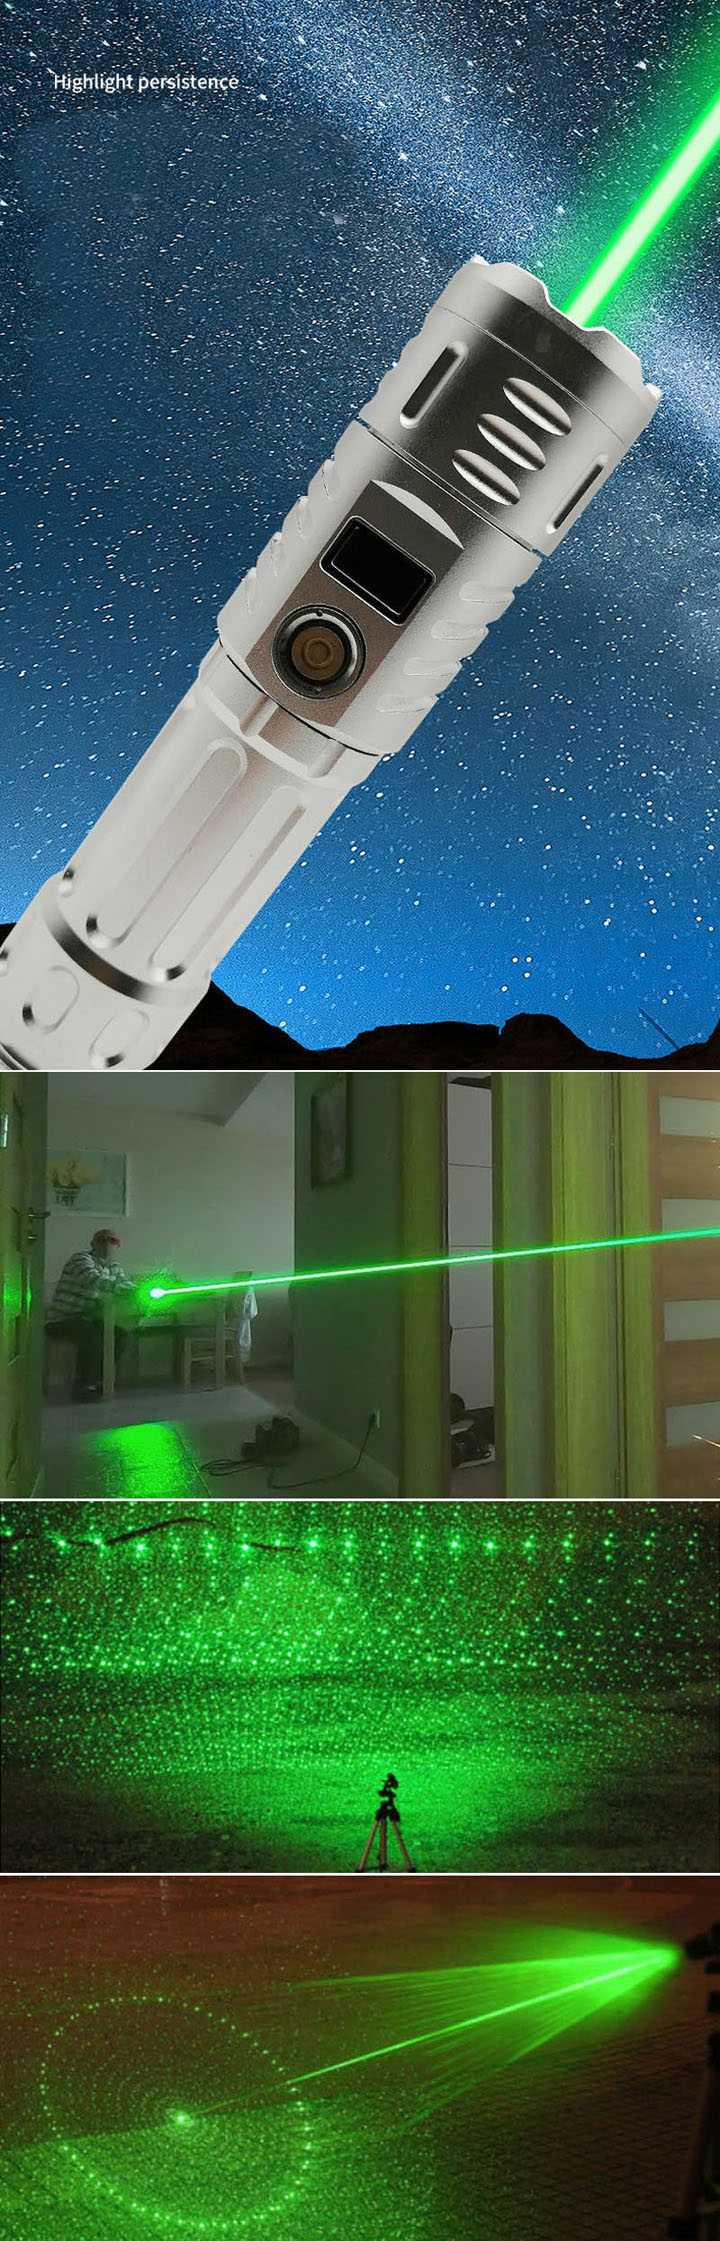 Pointeur laser vert le plus puissant